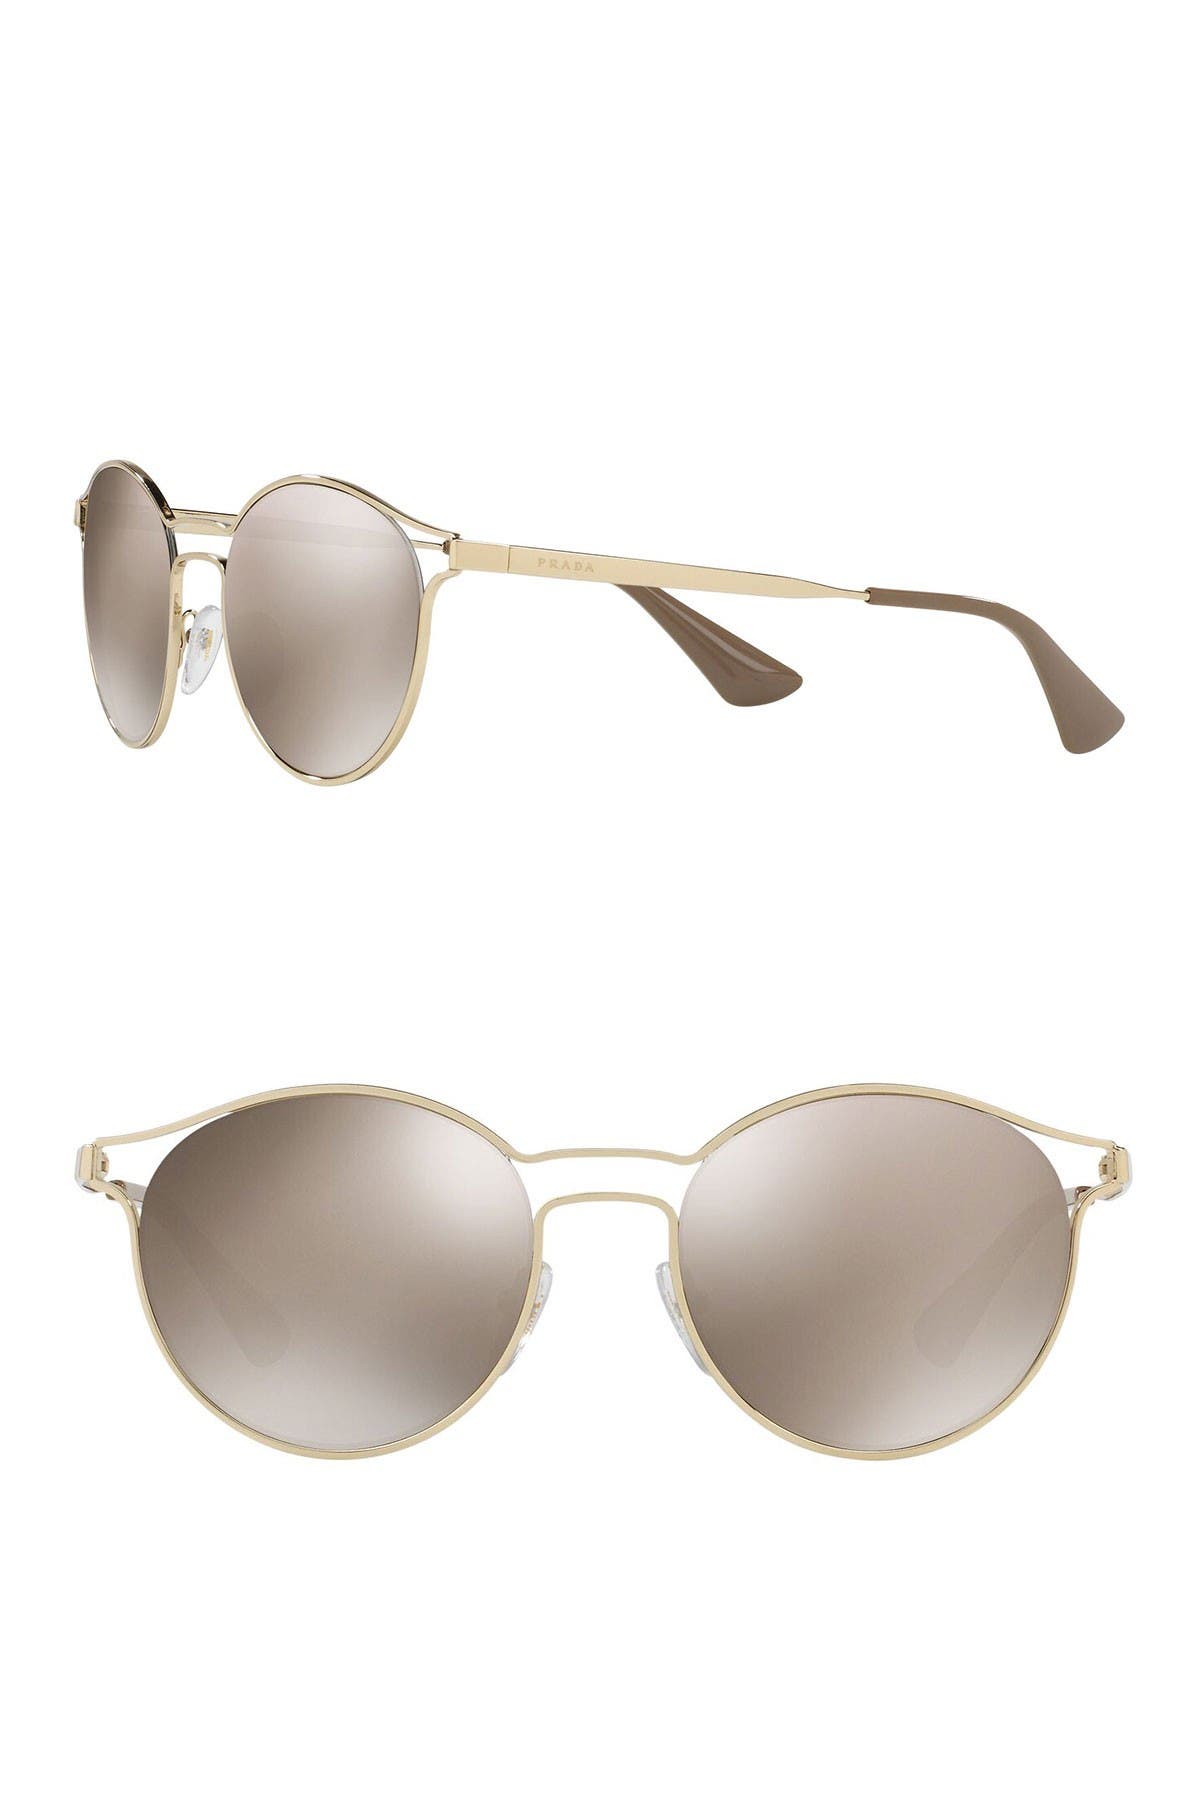 prada phantos catwalk sunglasses